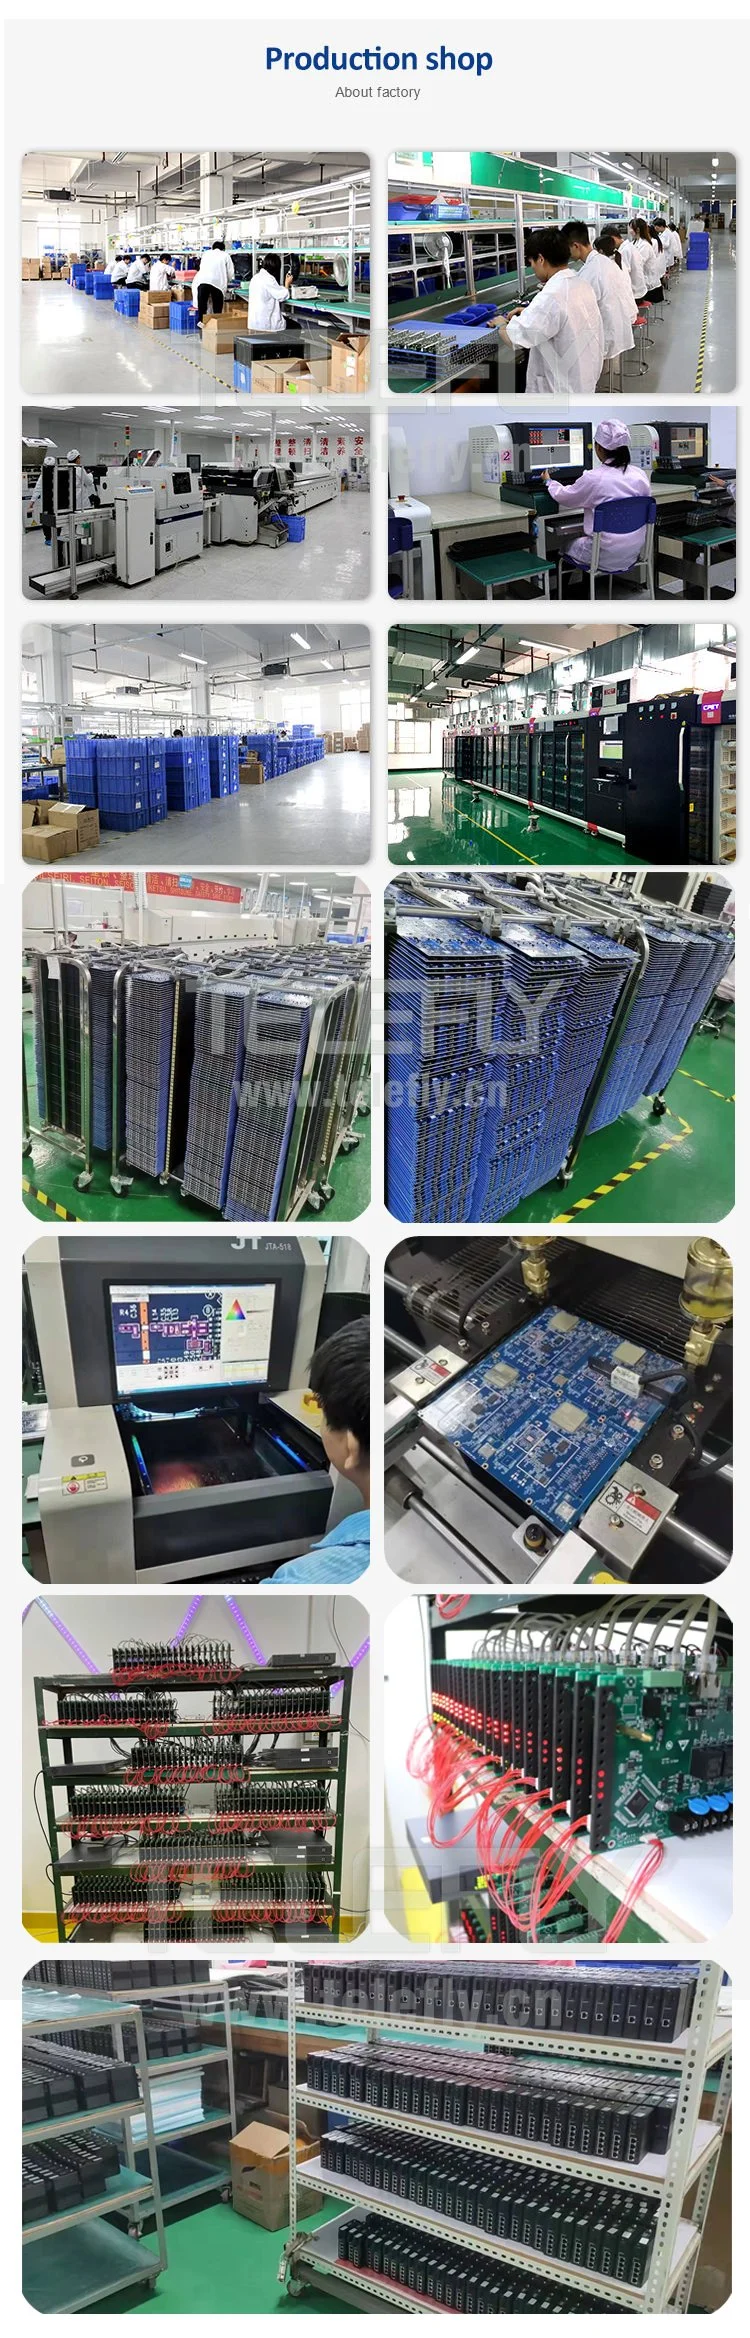 New Original IC Chips Xilinx Xc6slx25t-2csg324c Fpga Xc6slx25t Family 15032 Logic Units 24051 Cells 333MHz 1.2V 324-Pin Csbga in Stock